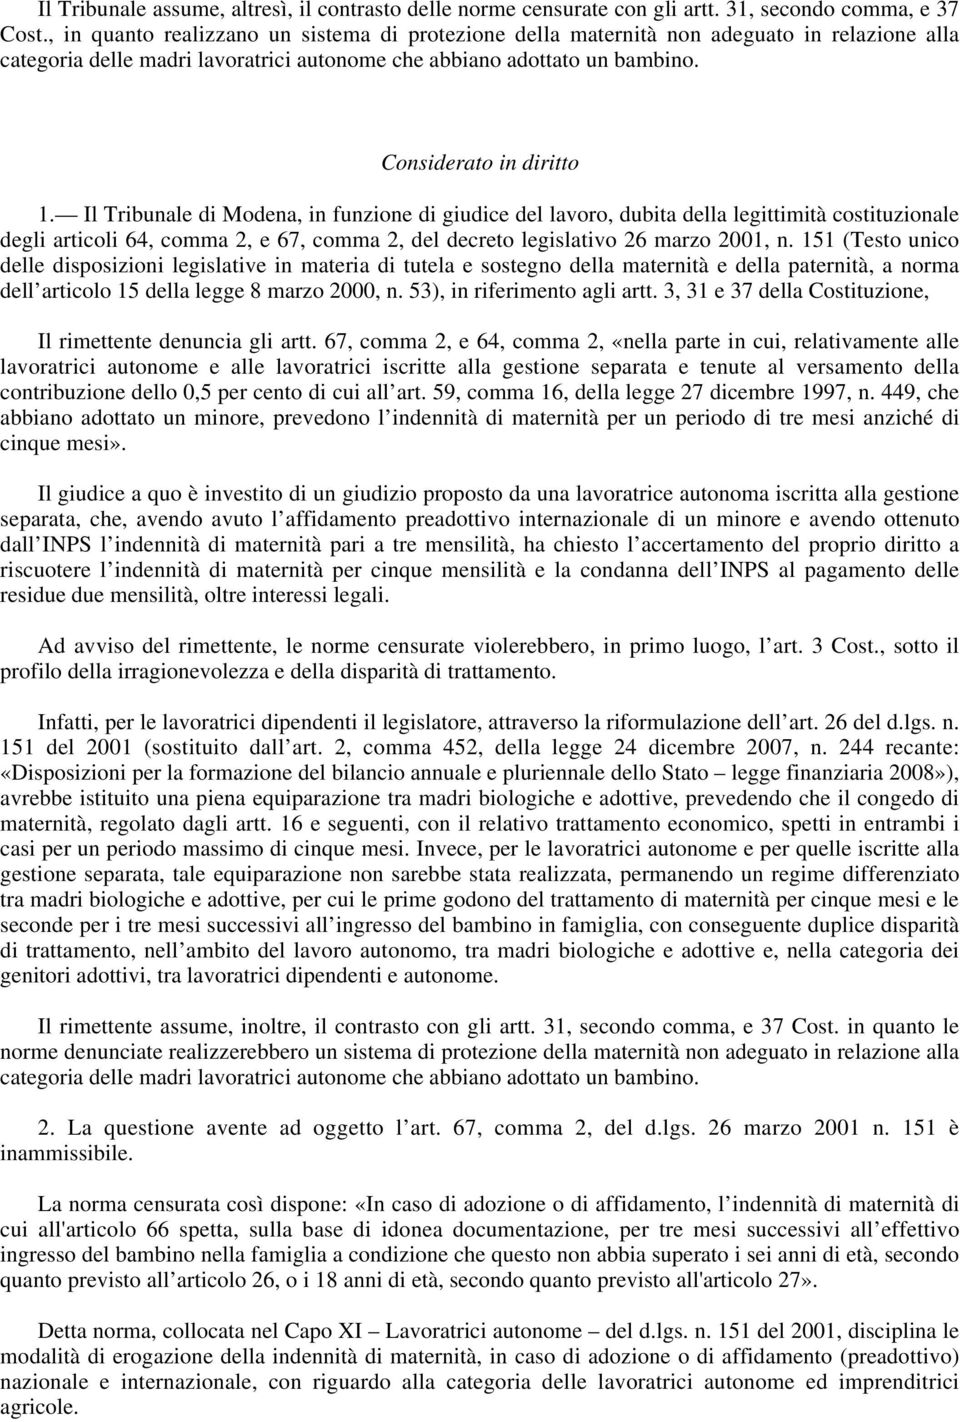 Il Tribunale di Modena, in funzione di giudice del lavoro, dubita della legittimità costituzionale degli articoli 64, comma 2, e 67, comma 2, del decreto legislativo 26 marzo 2001, n.